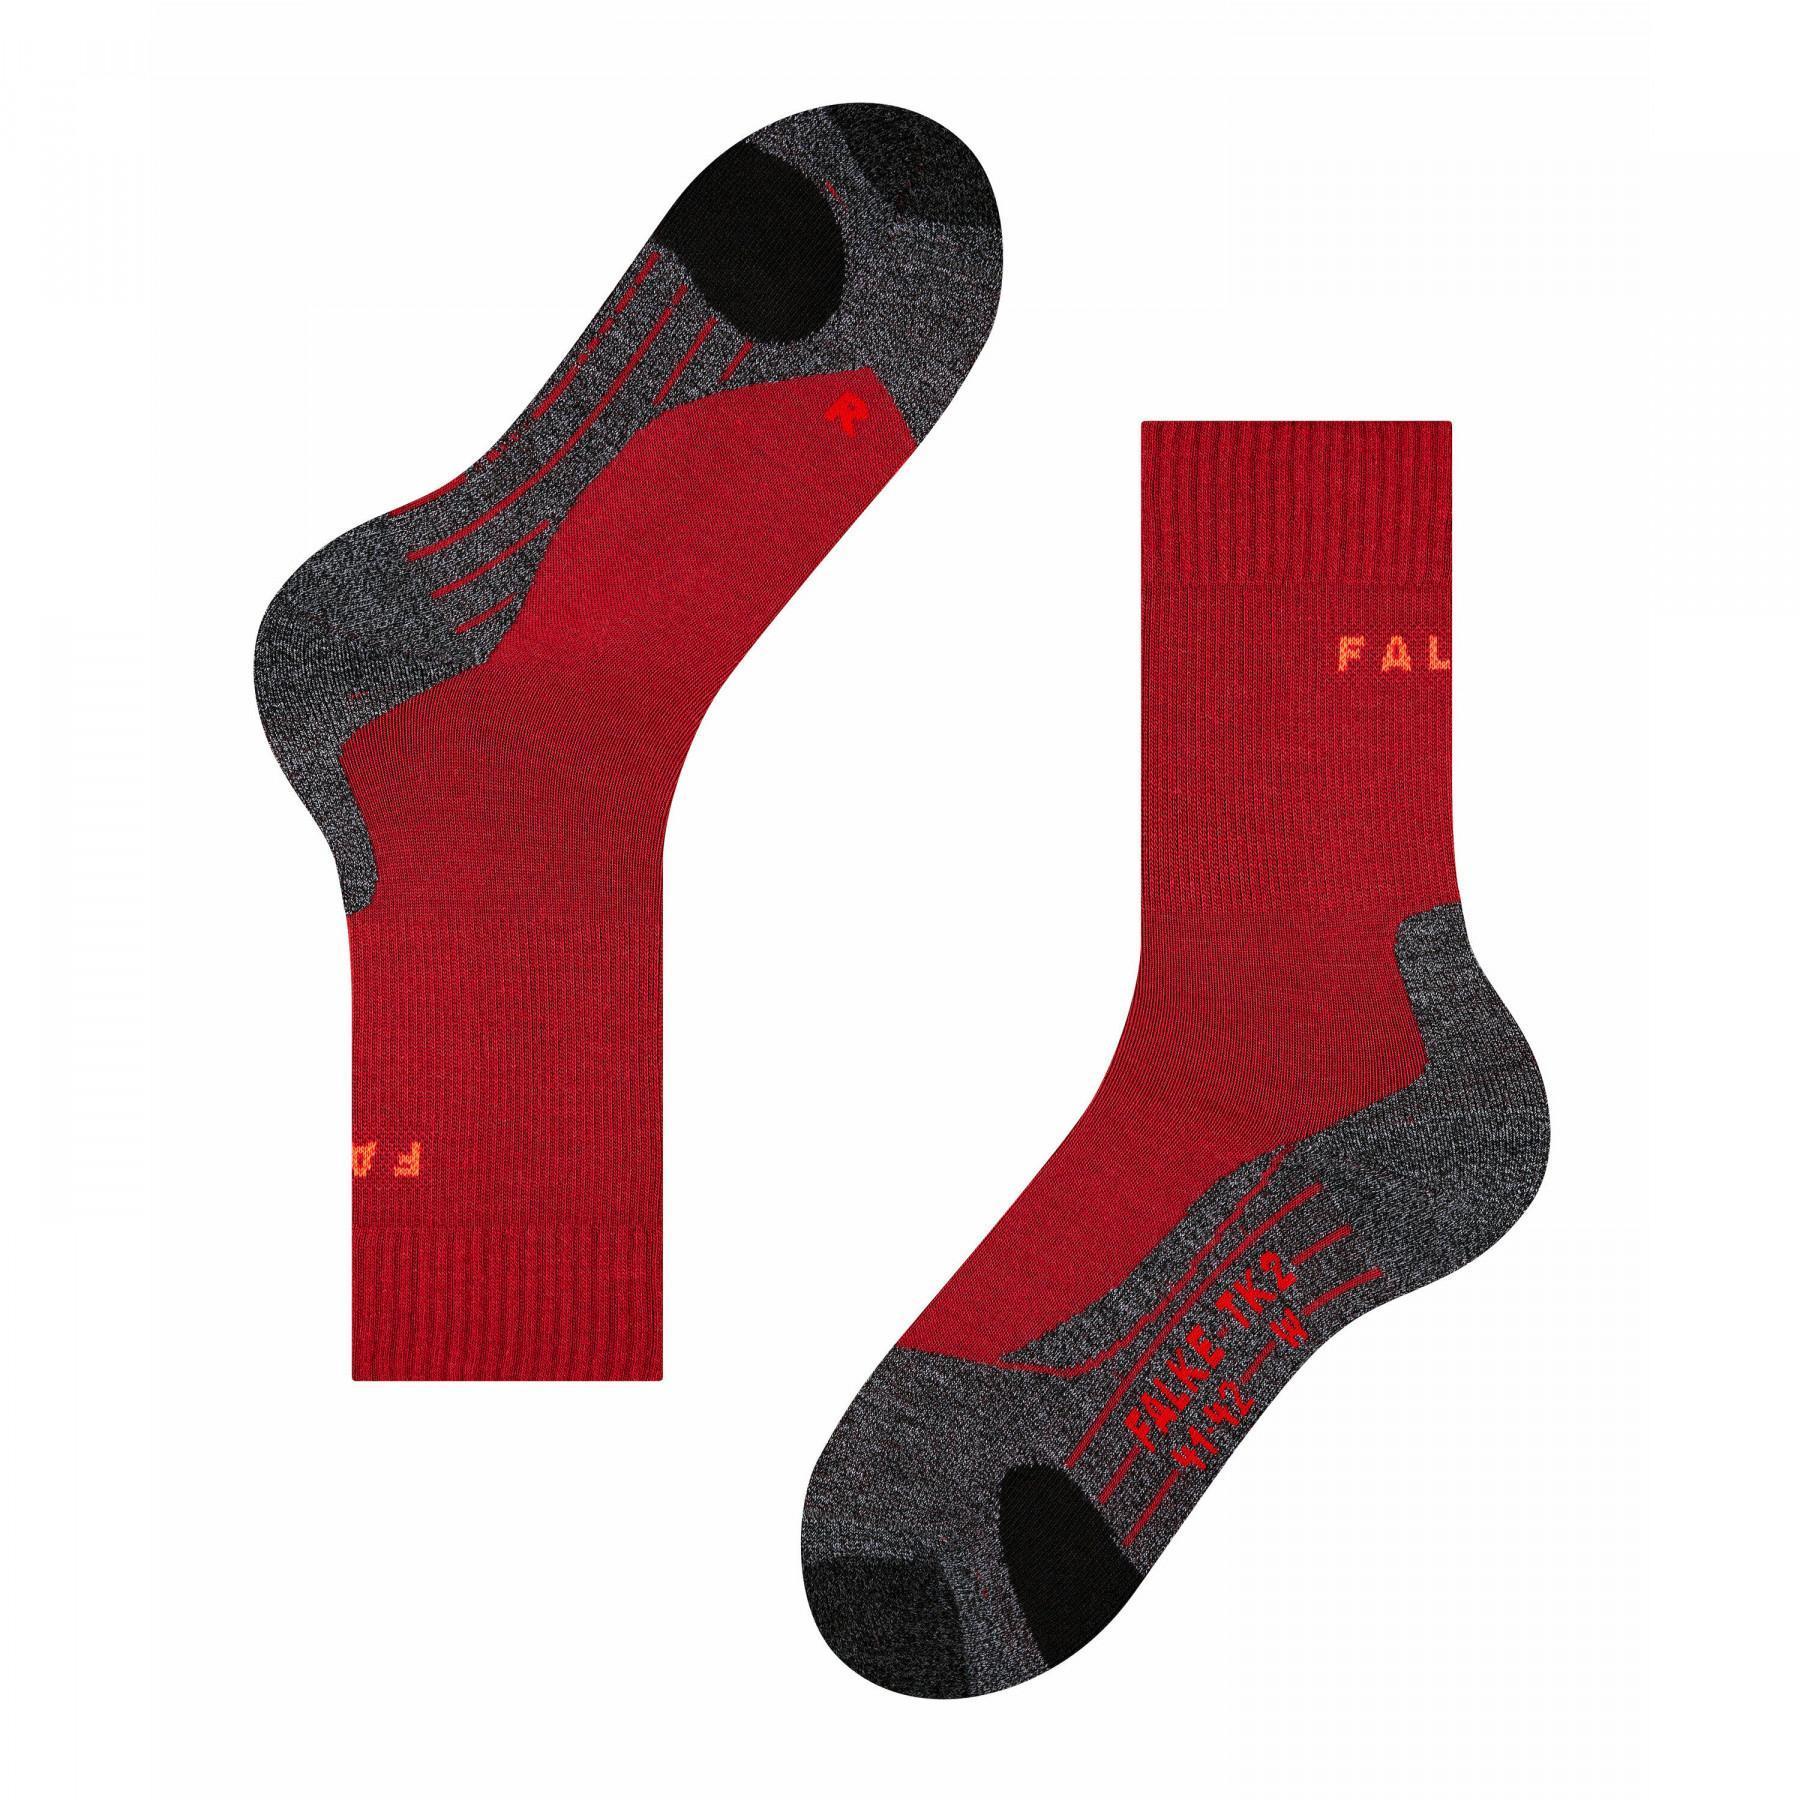 Women's socks Falke TK2